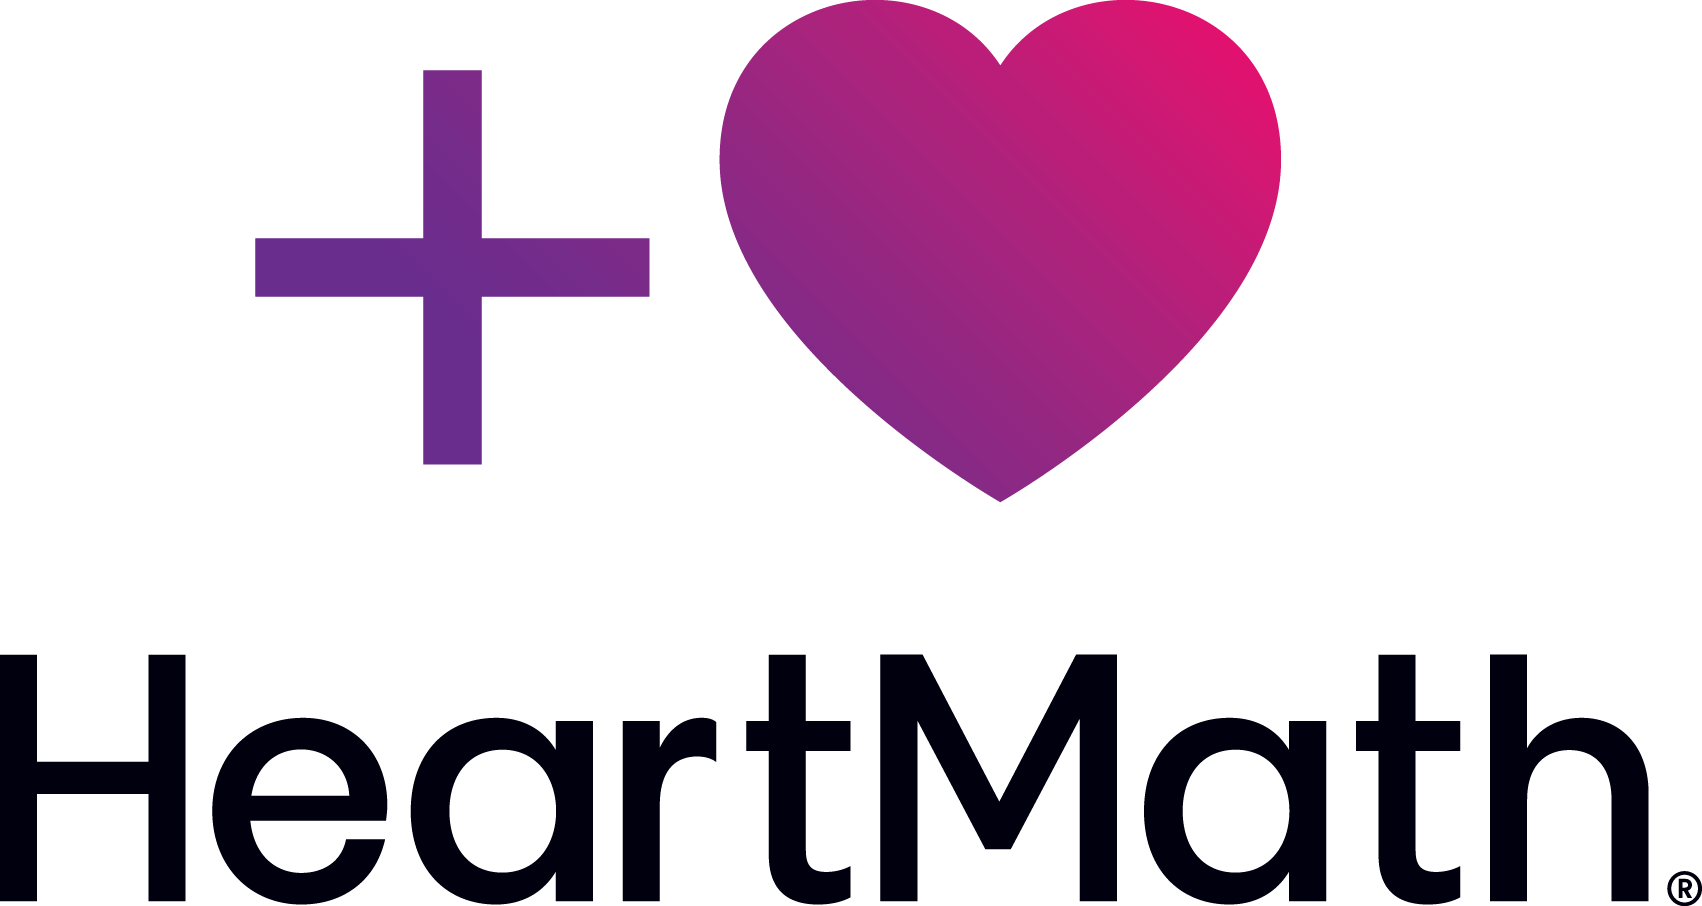 Heart math logo